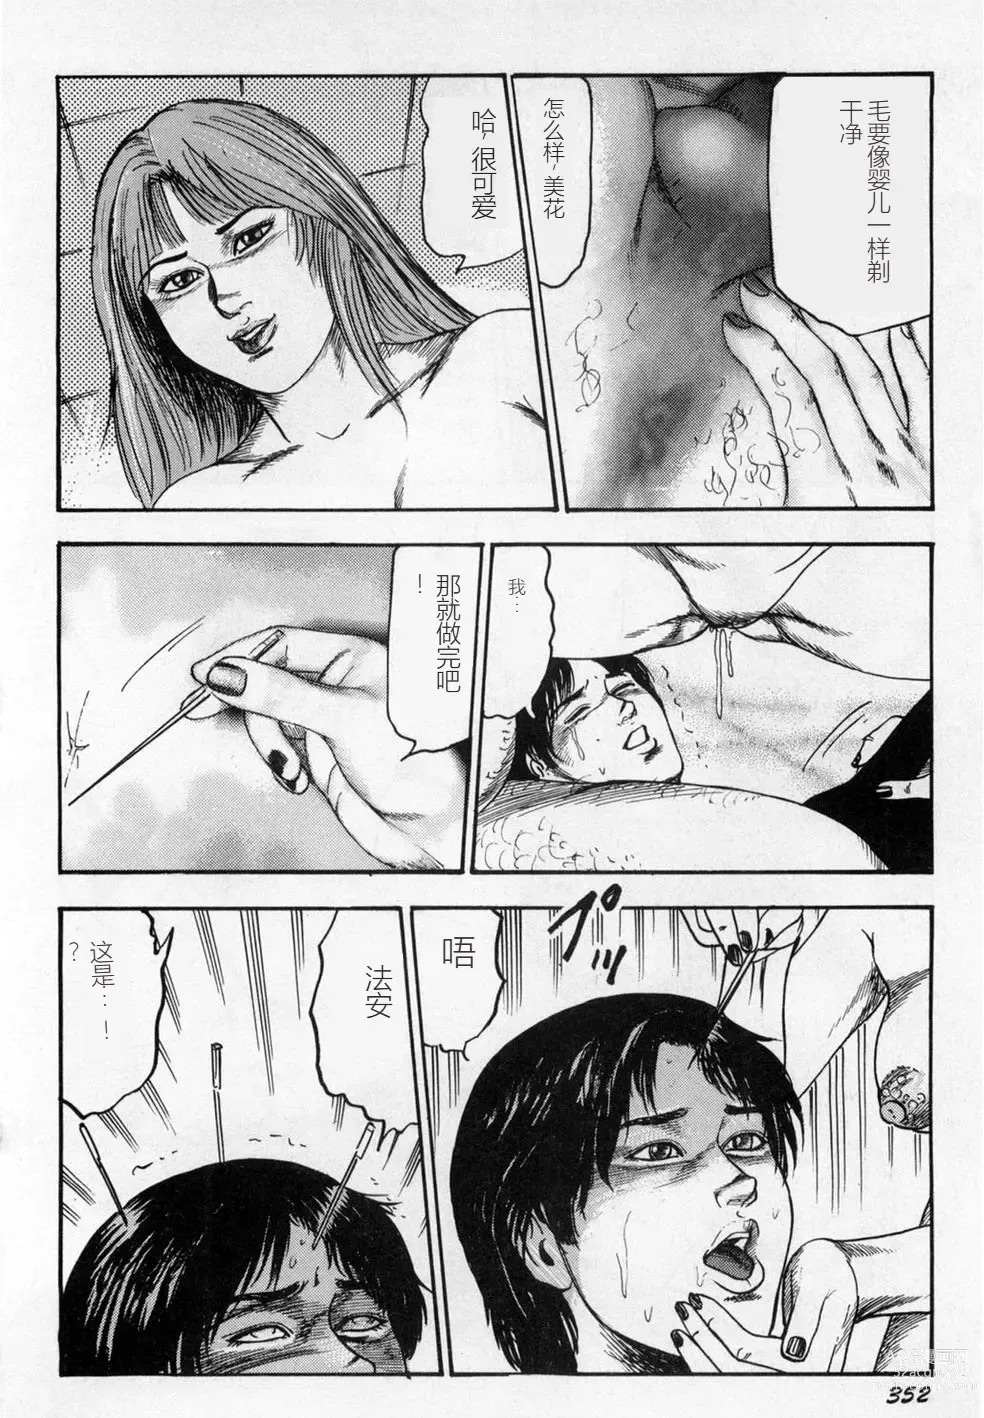 Page 353 of manga Injuu Shimai